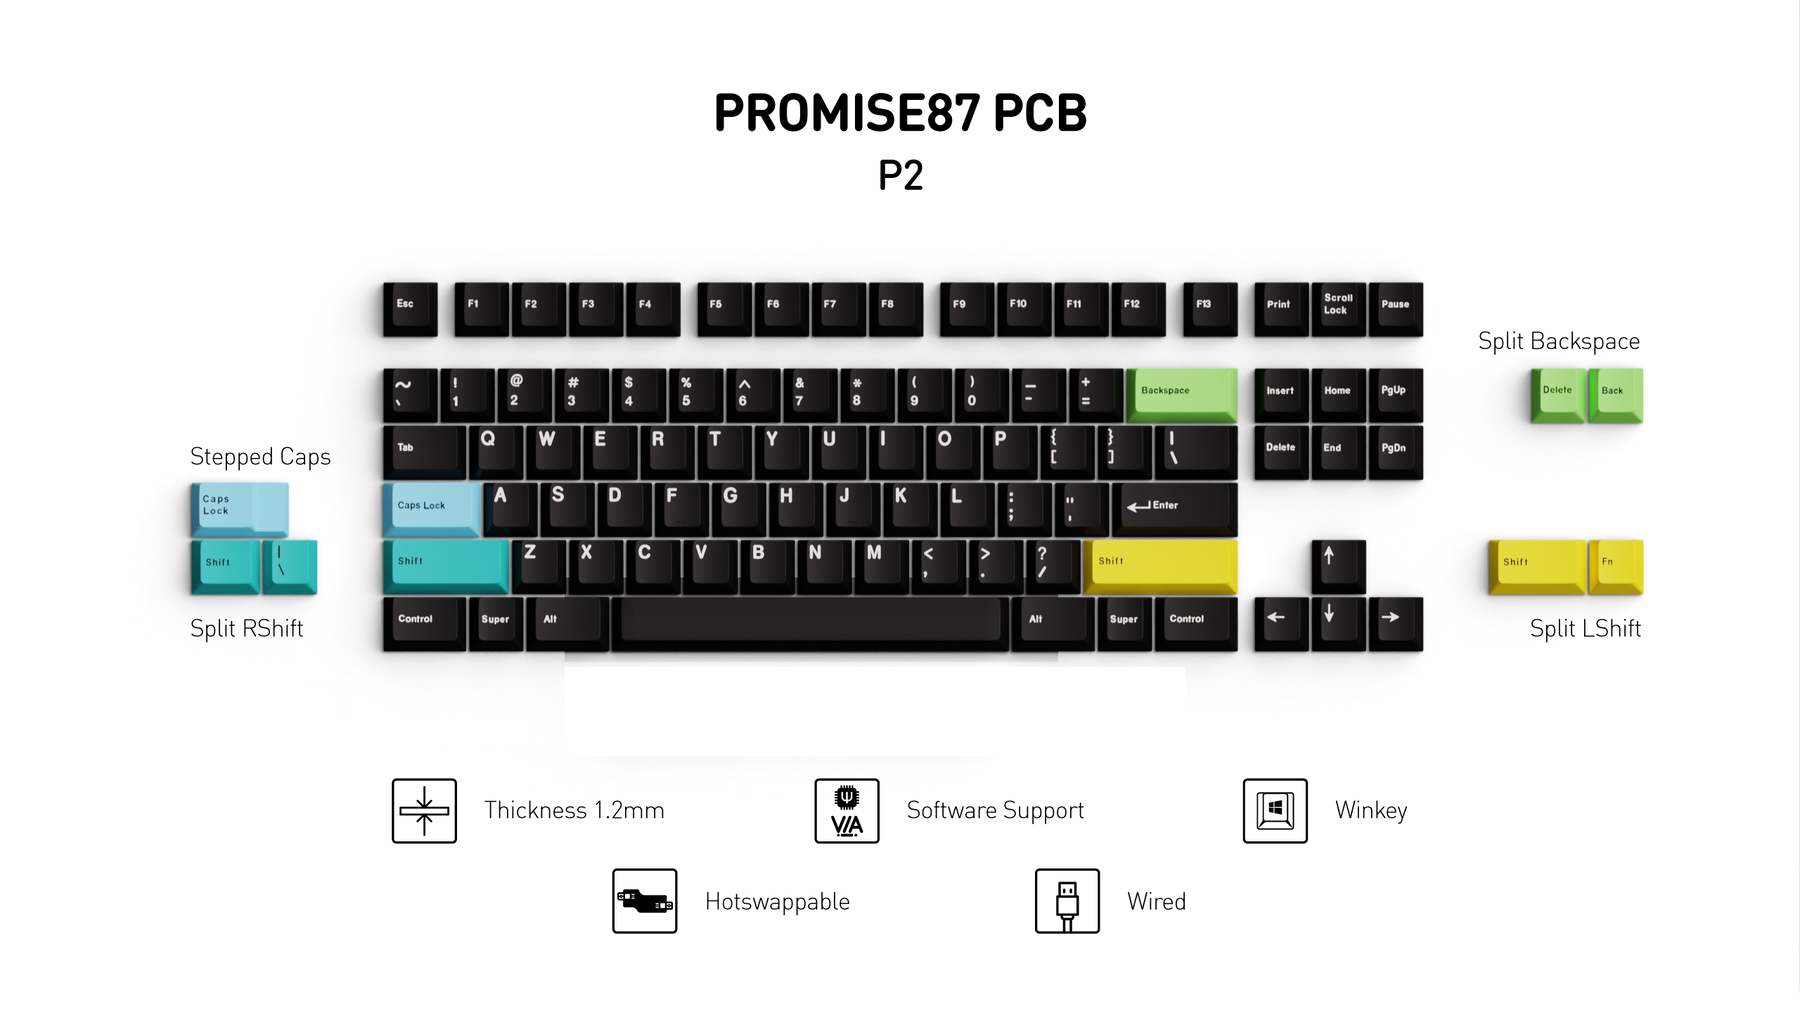 Promise87 Keyboard Kit - Addons